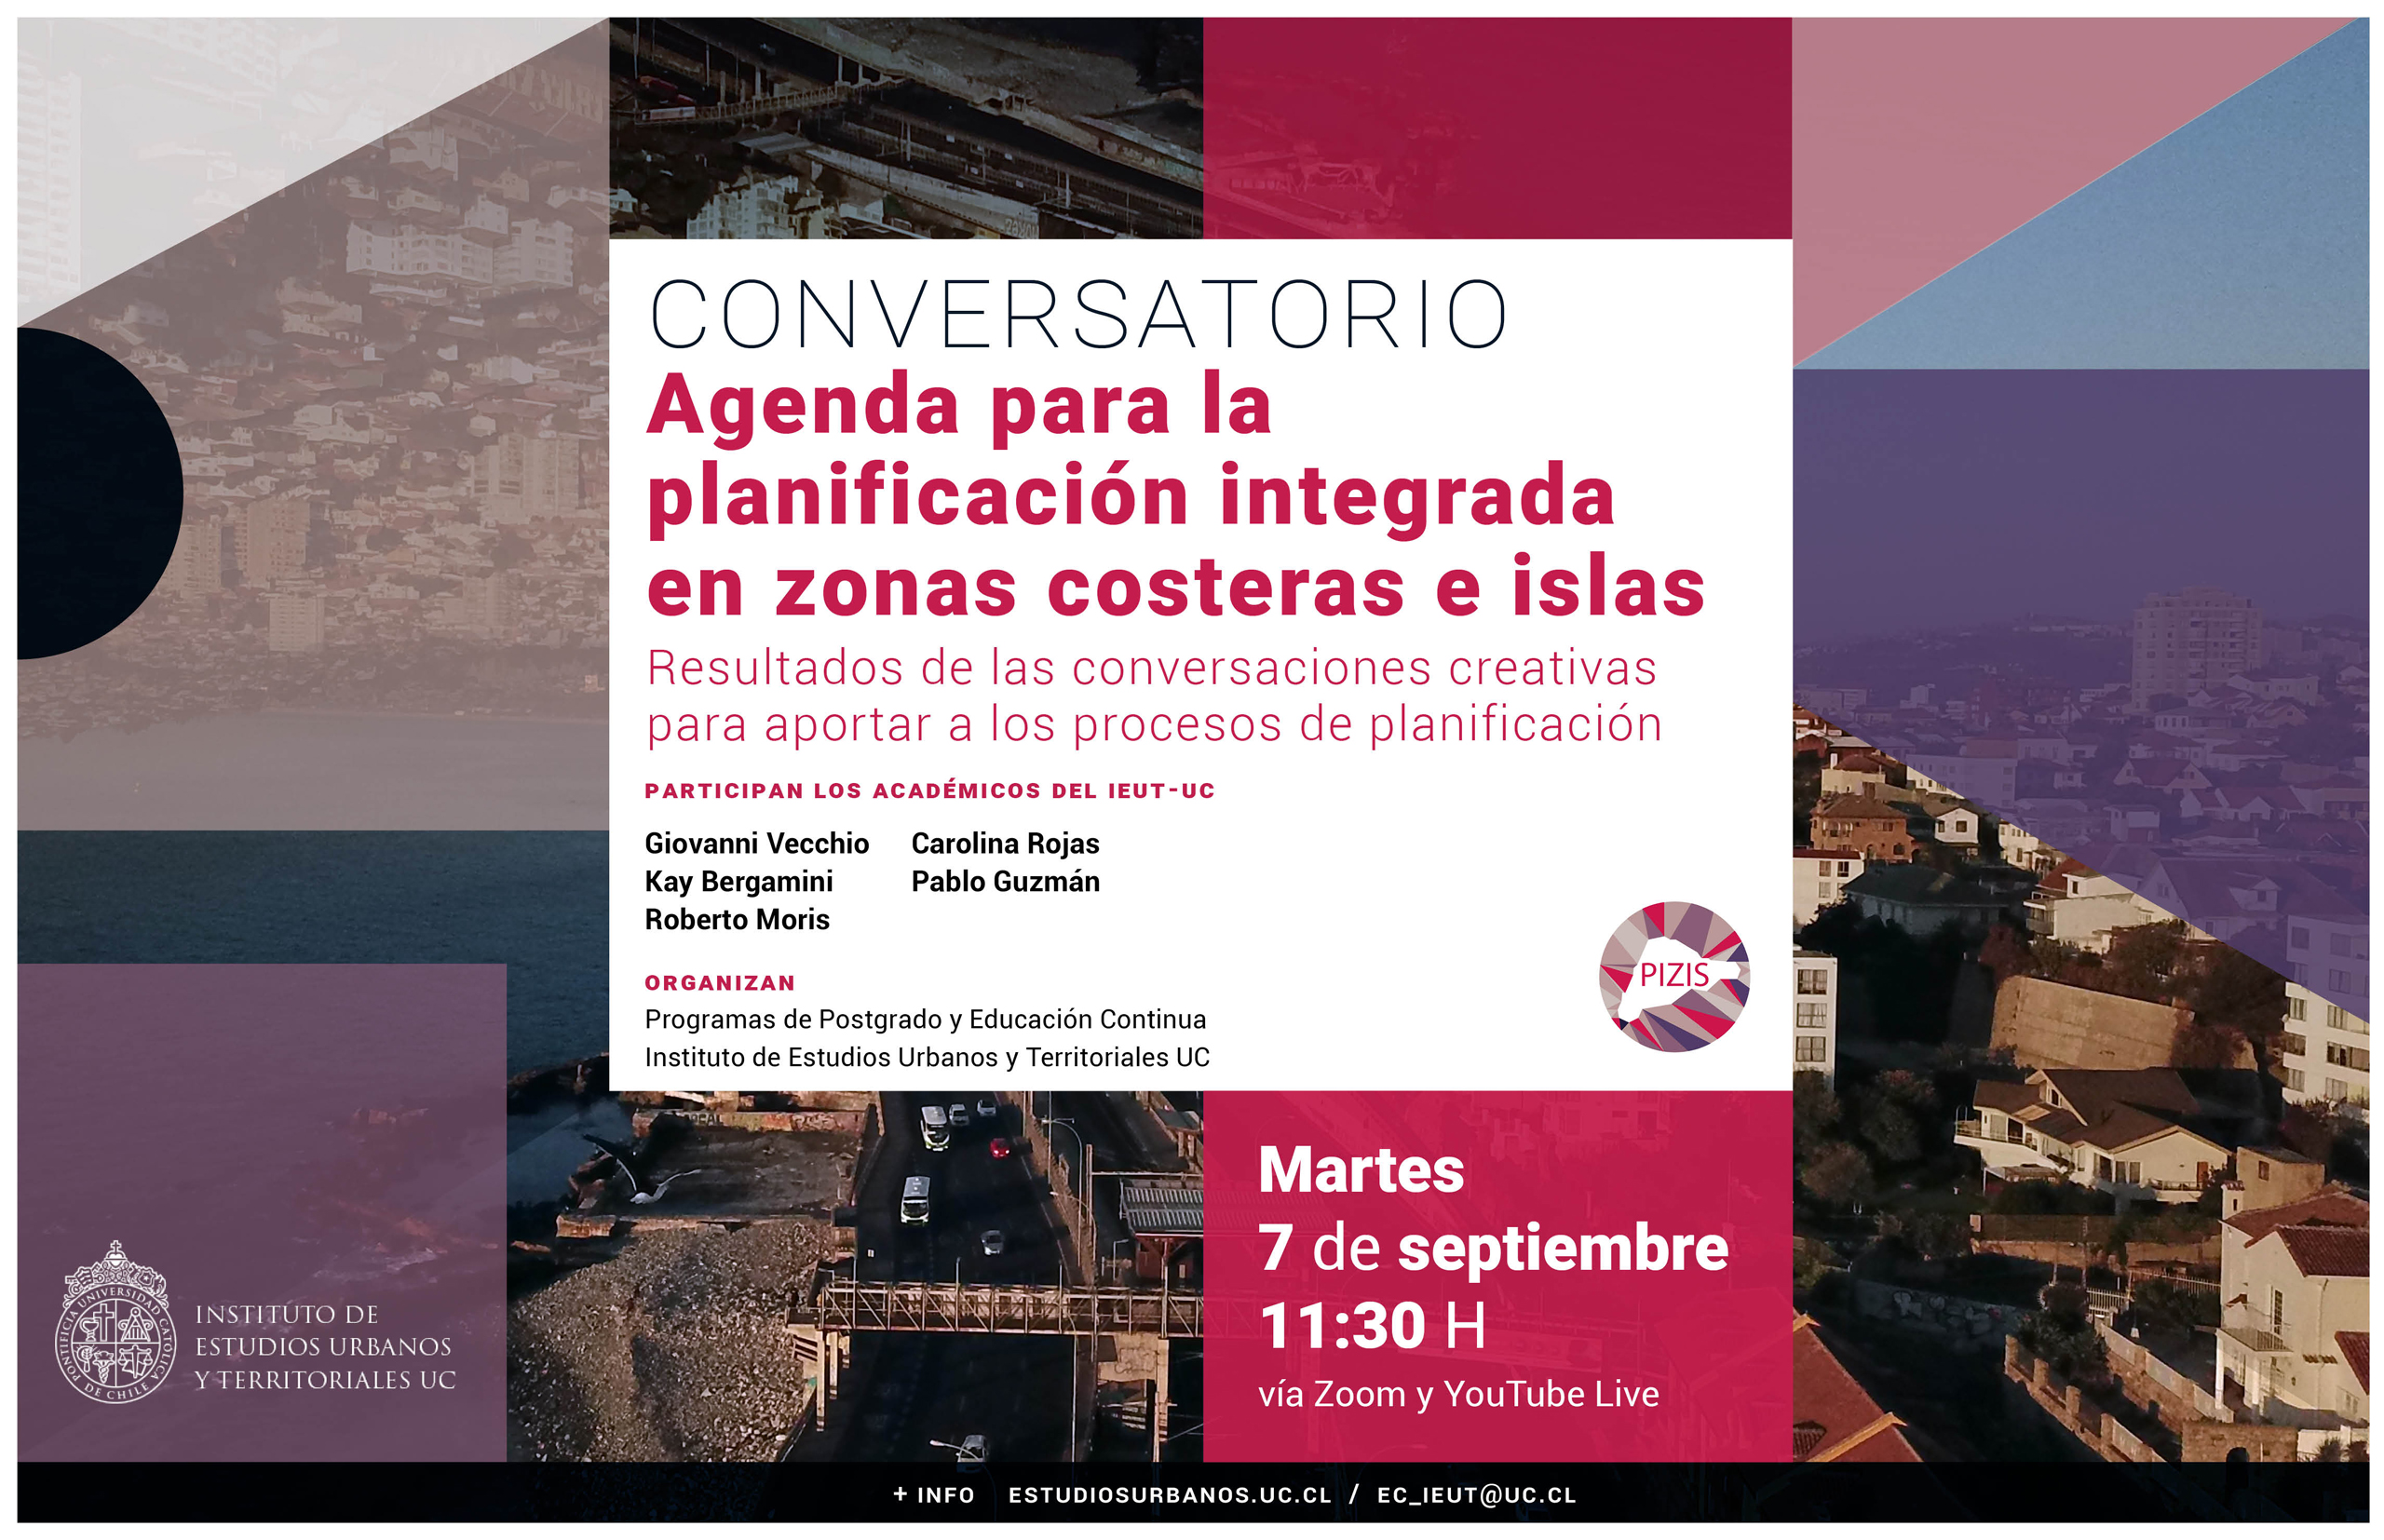 Agenda para la planificación integrada en zonas costeras e islas.